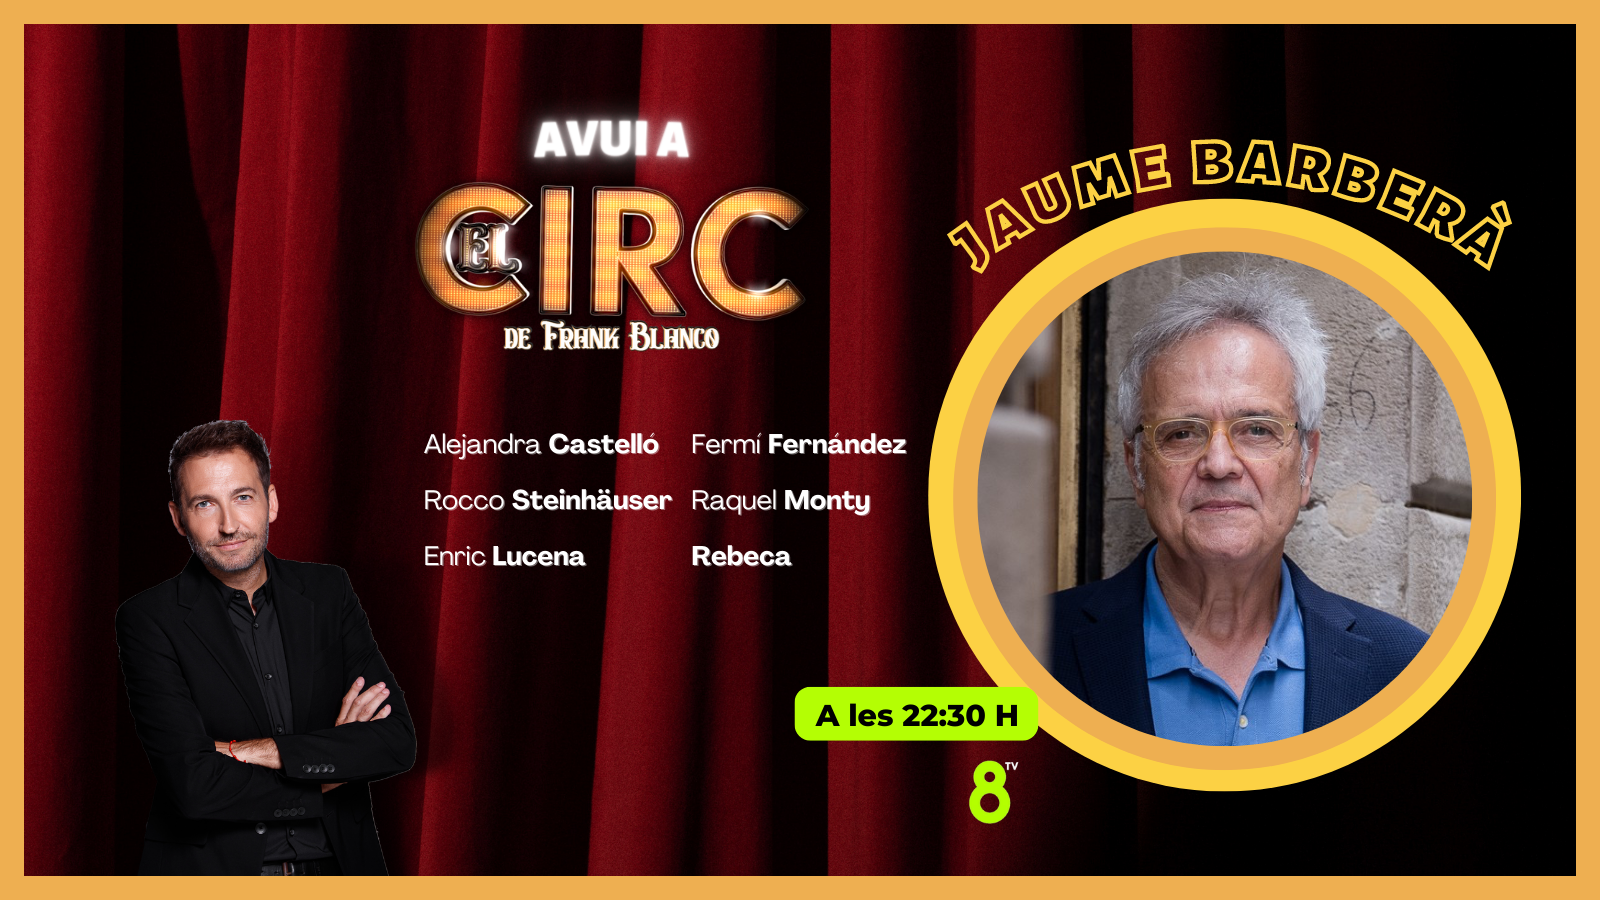 20/09/2022 - Jaume Barberà - El Circ - 8TV